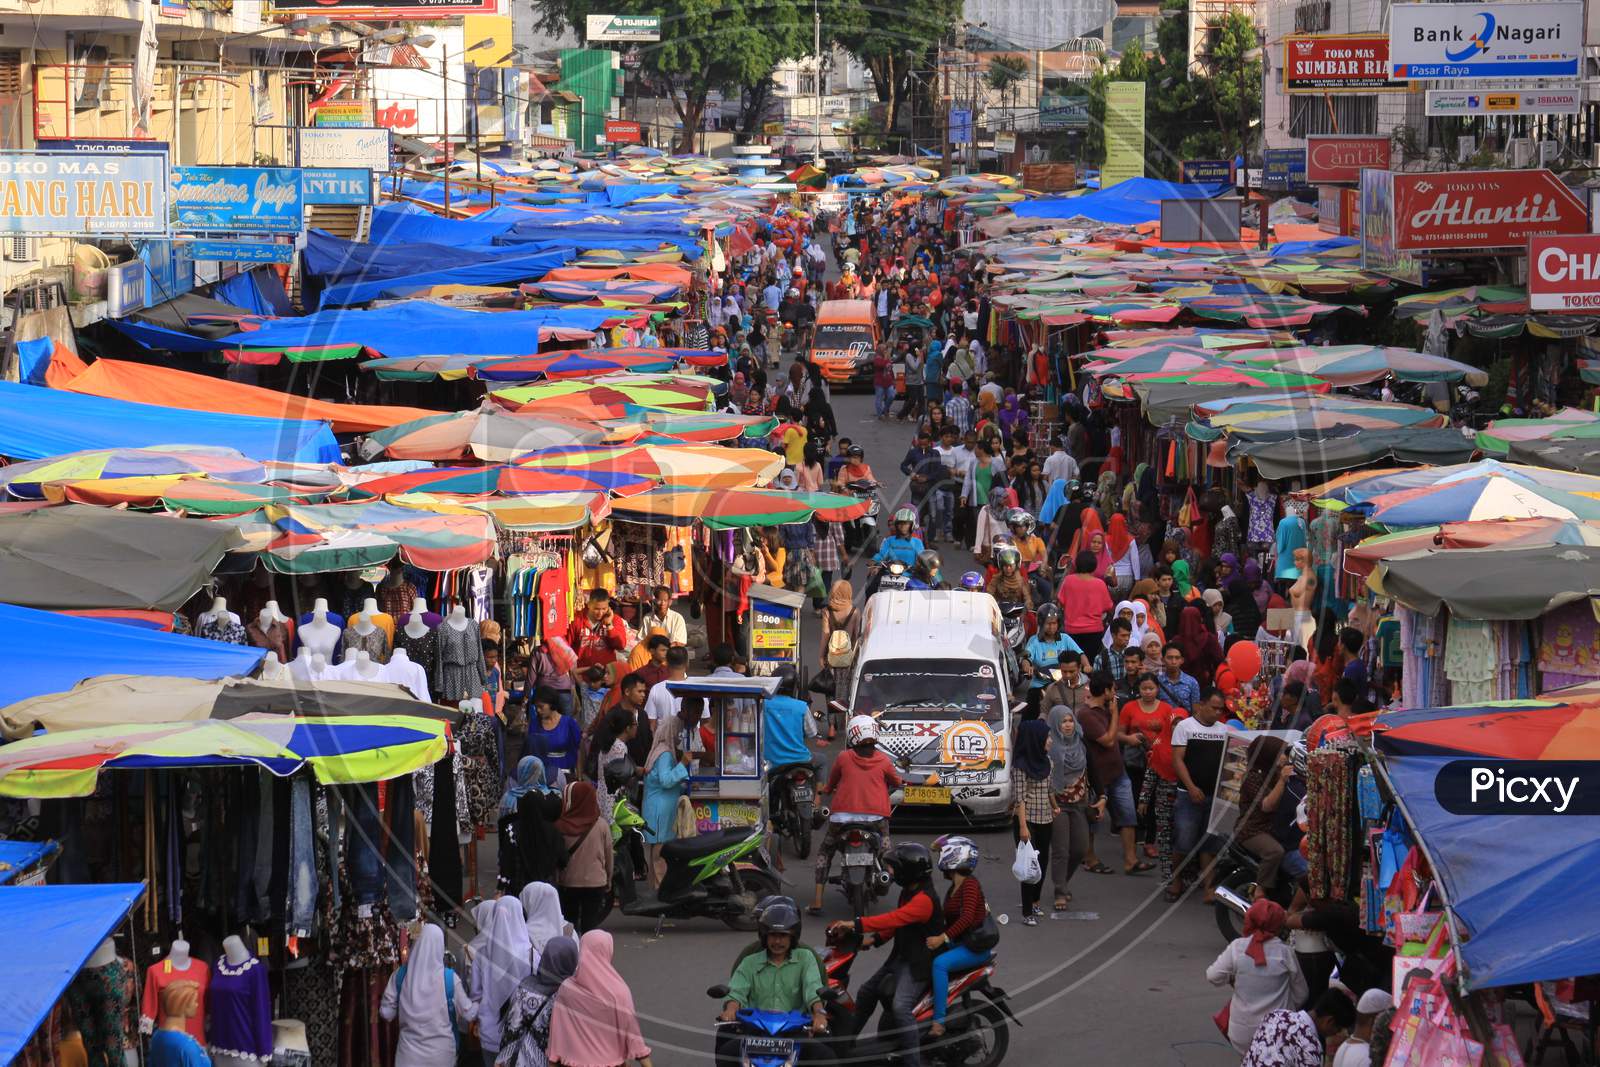 Pasar Raya Crowded Market In Padang, West Sumatra